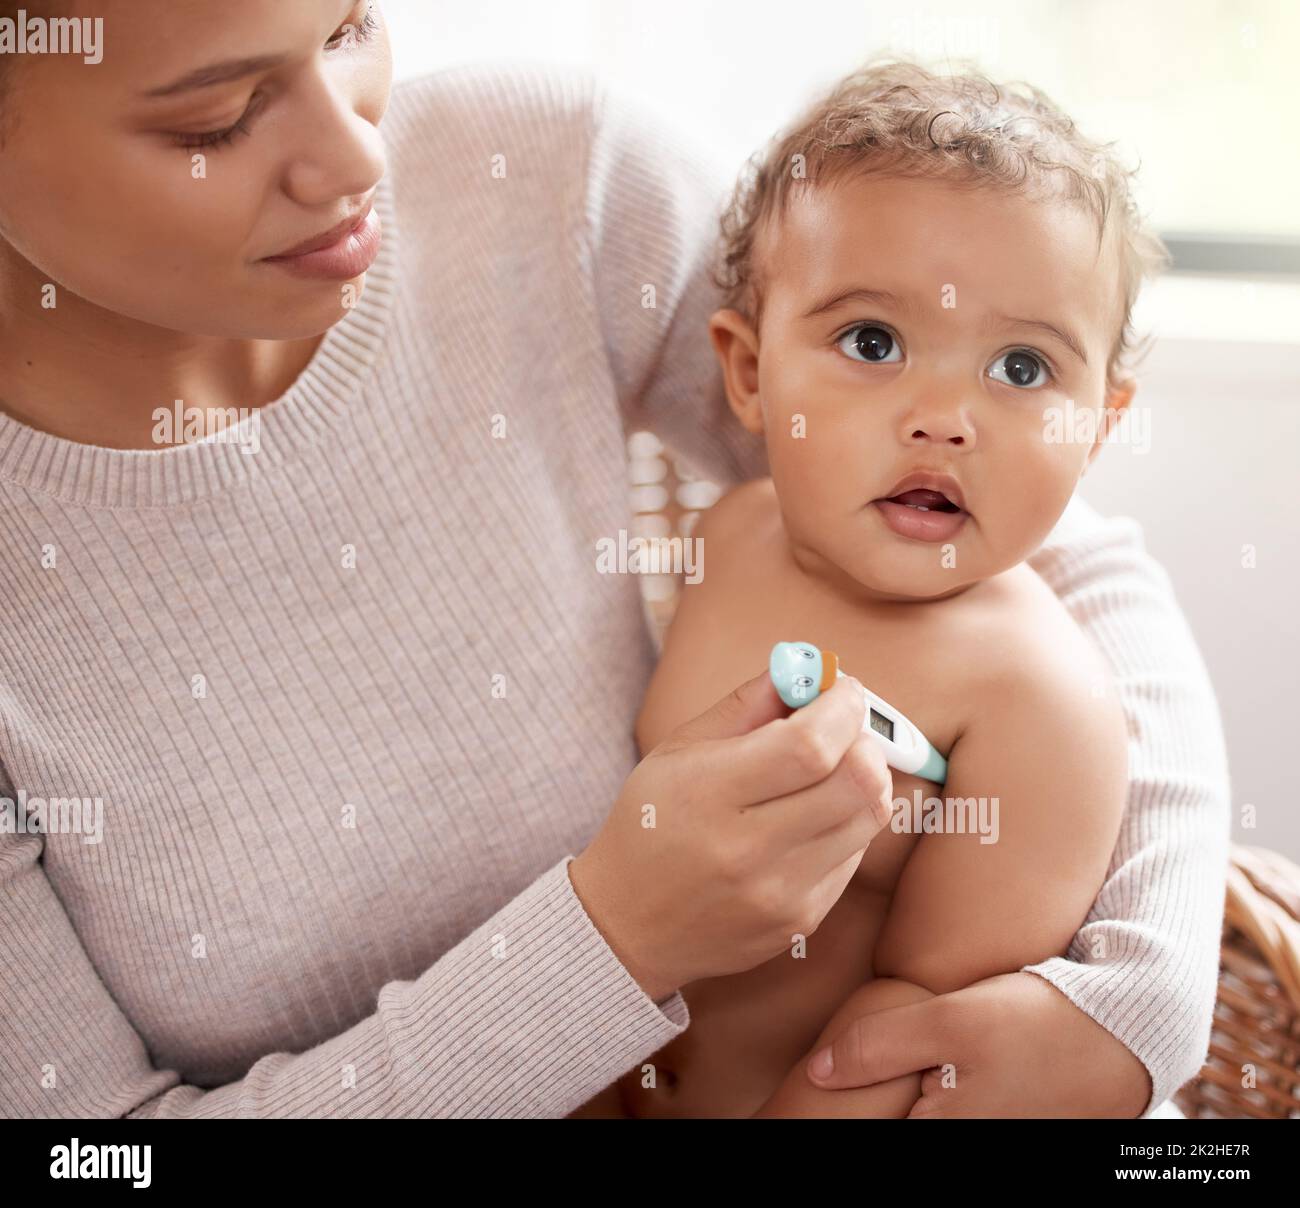 Du fühlst dich ein bisschen warm zu mir. Aufnahme eines Babys, das weint, während ihre Temperatur von ihrer Mutter überprüft wird. Stockfoto